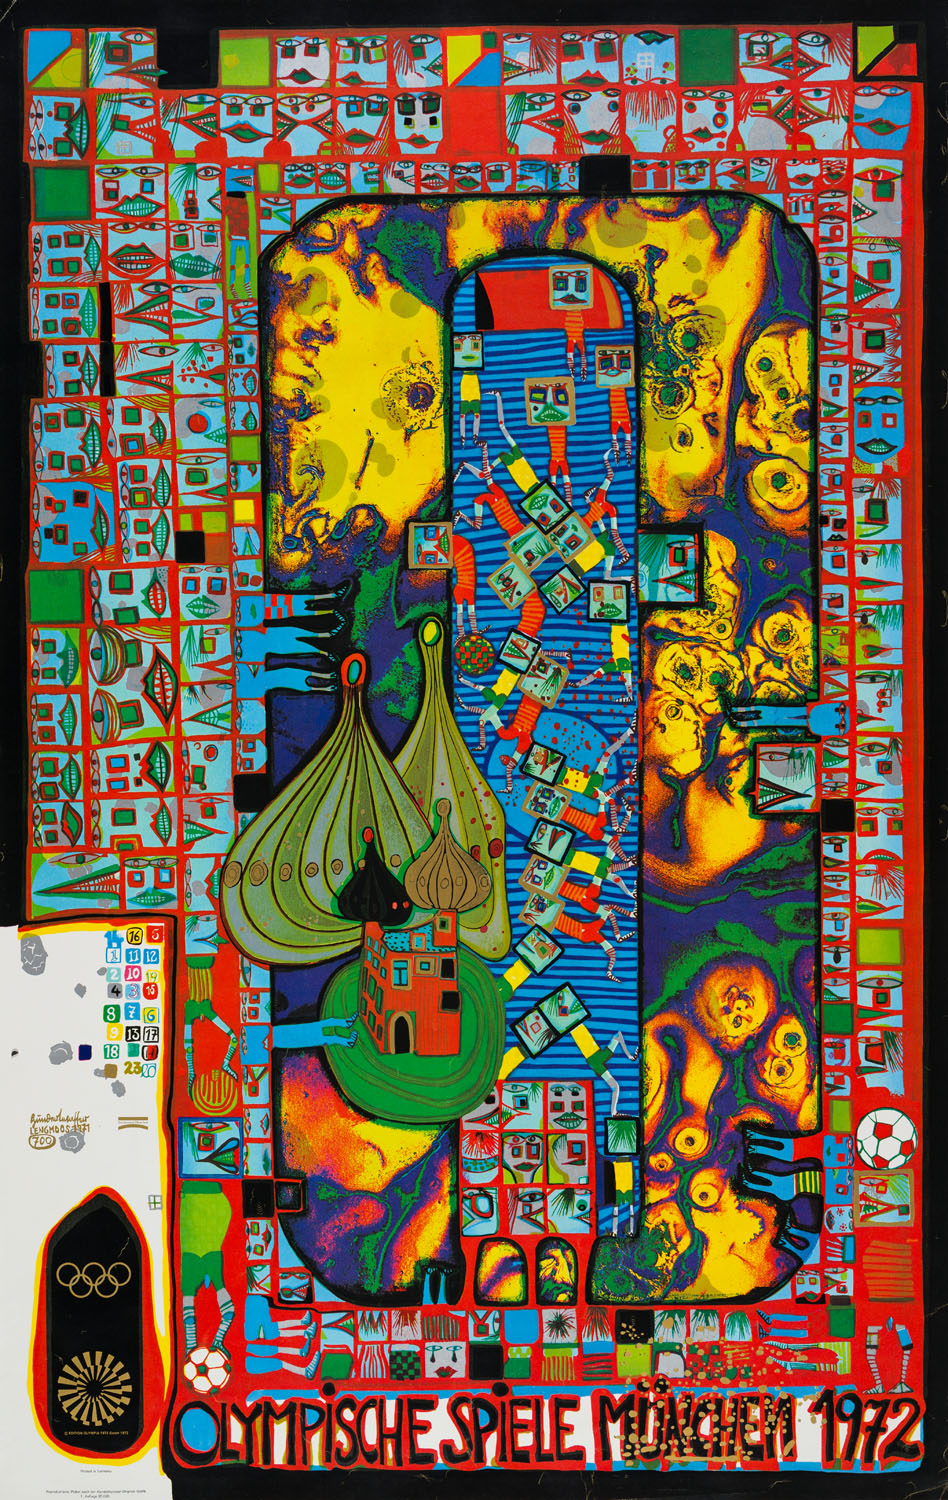 Plakat mit farbenfroher Grafik. Unten steht “OLYMPISCHE SPIELE MÜNCHEN 1972“